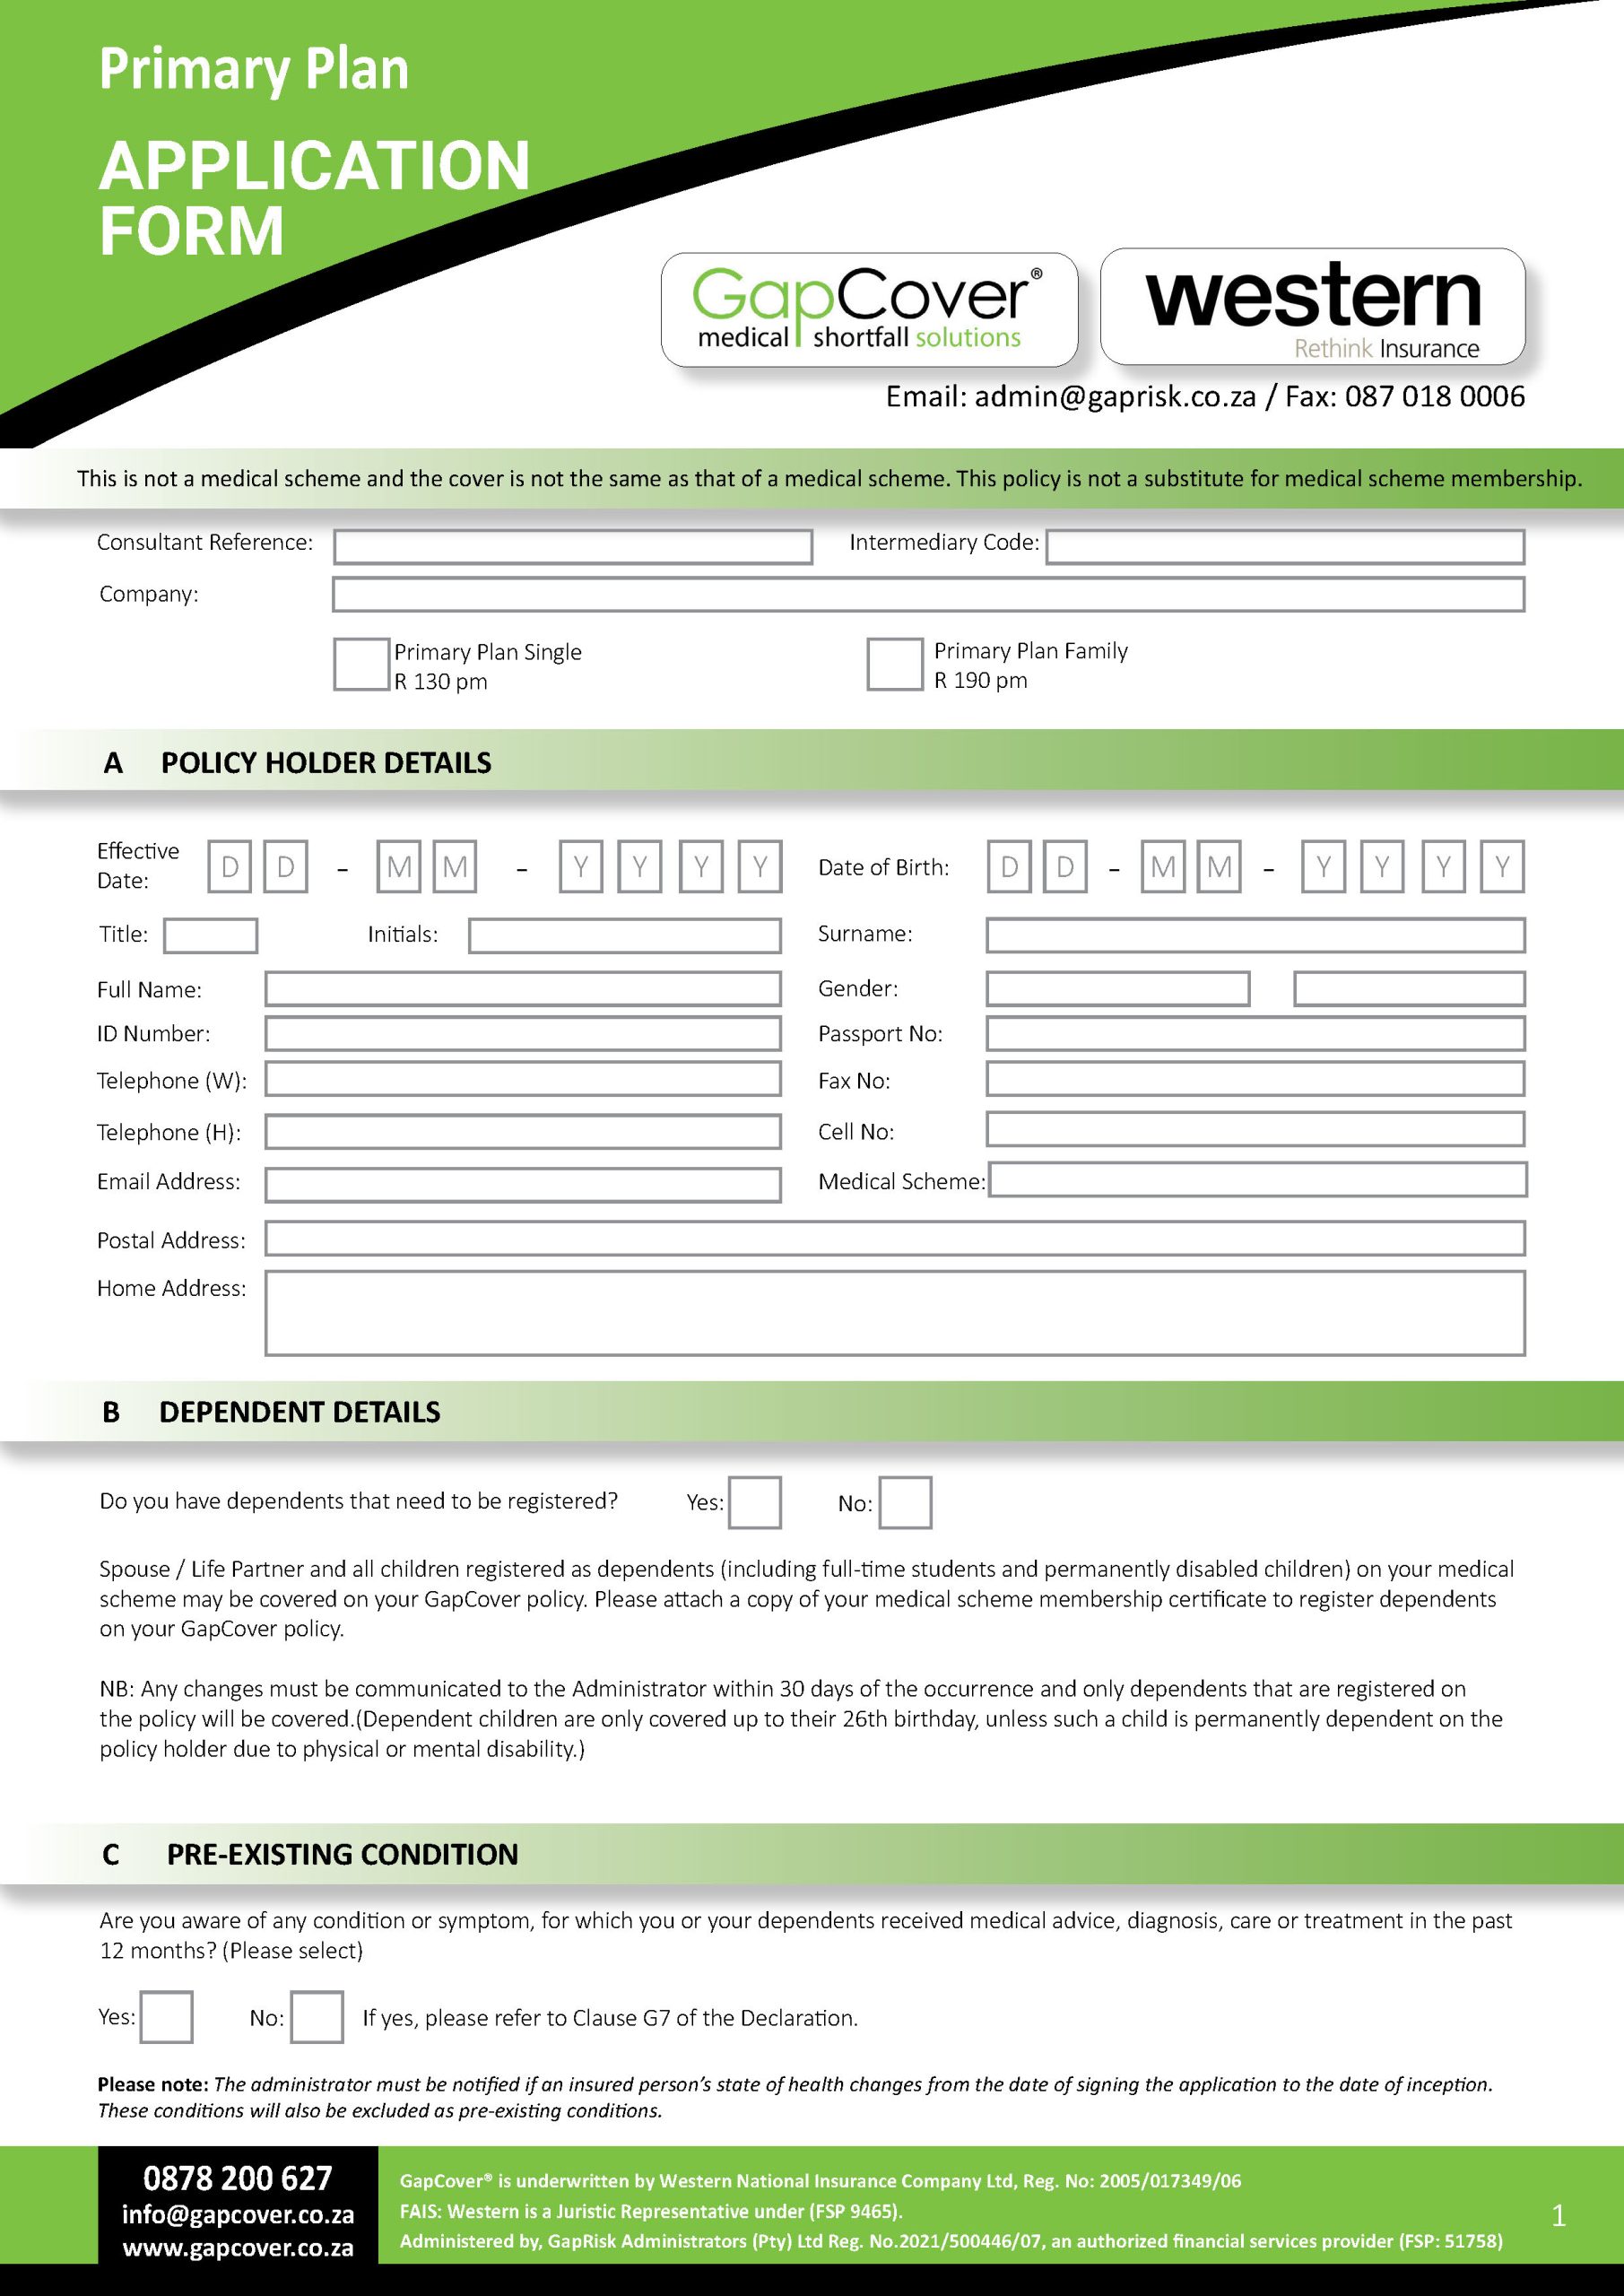 GapCover Elite Application Form